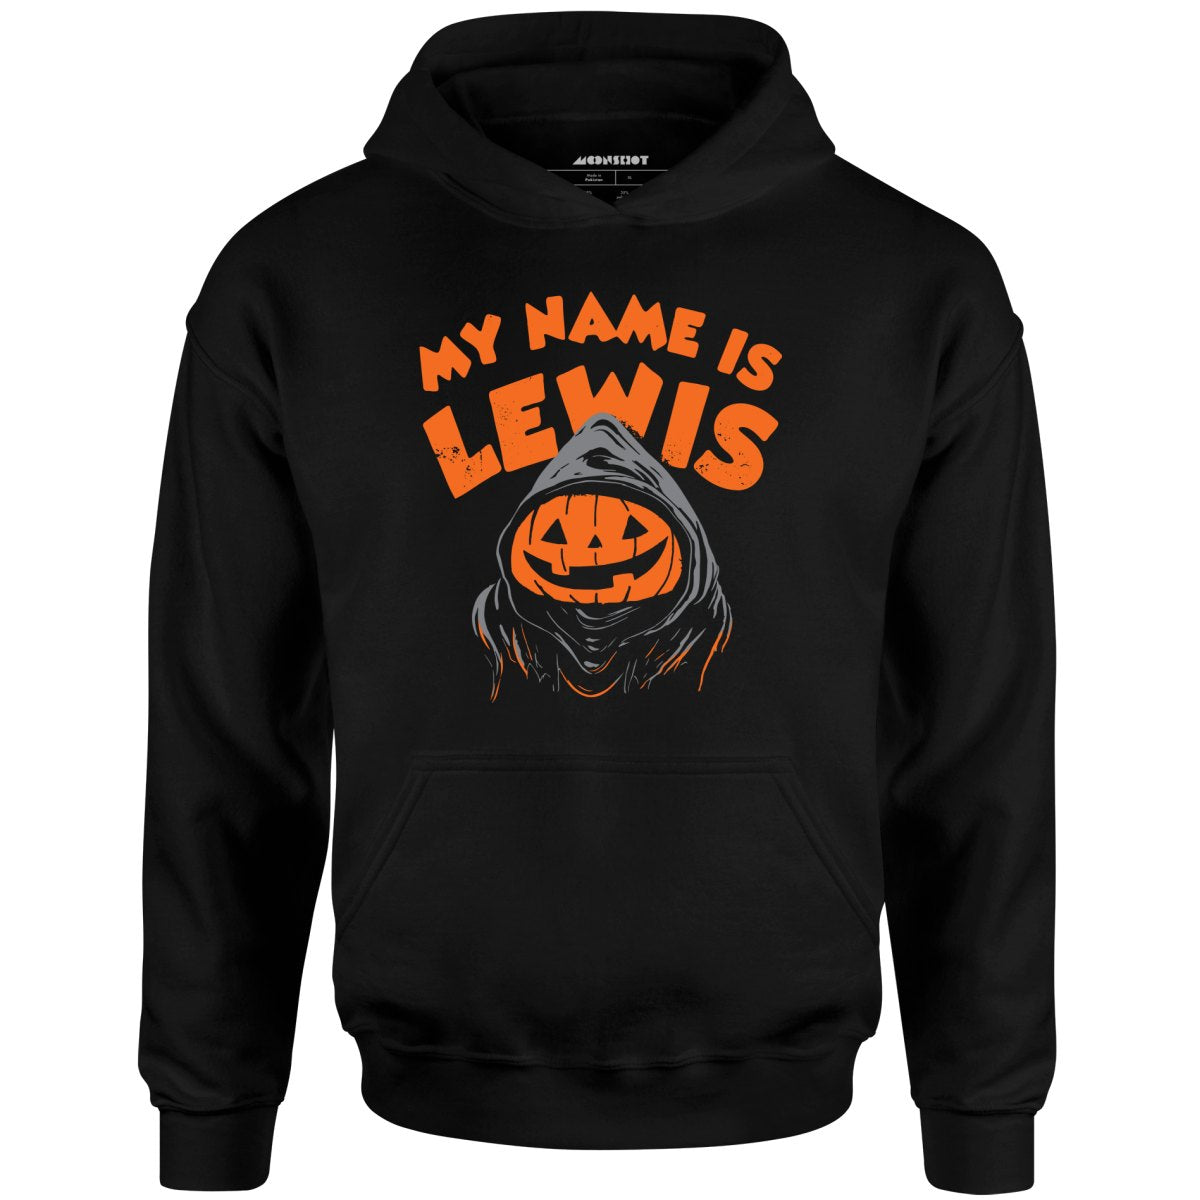 My Name is Lewis - Unisex Hoodie